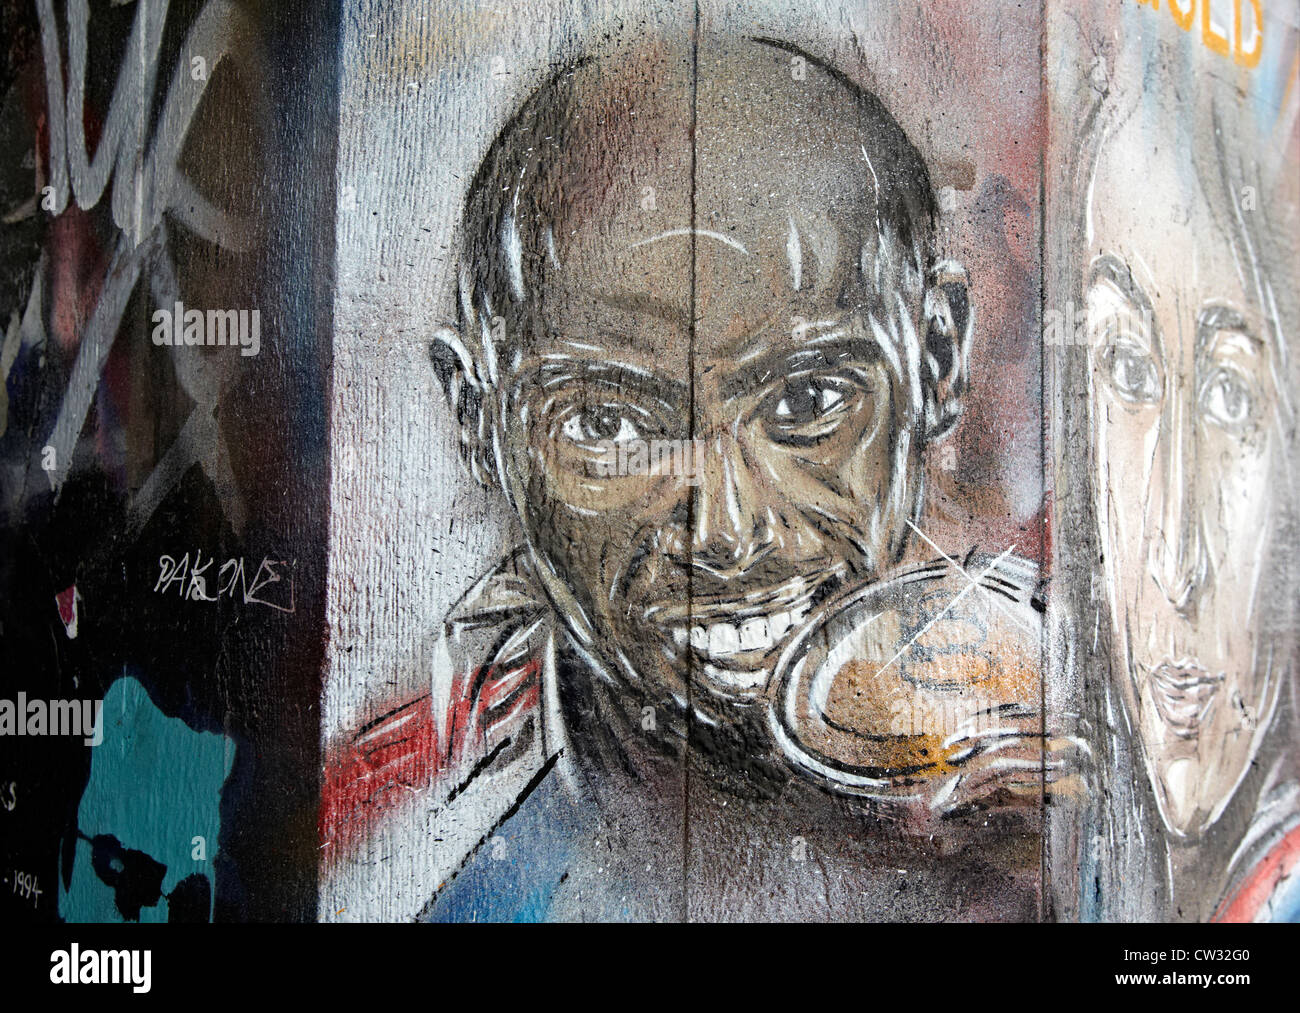 Mo Farah Olympic Gold Medal Winner Graffiti London UK Stock Photo